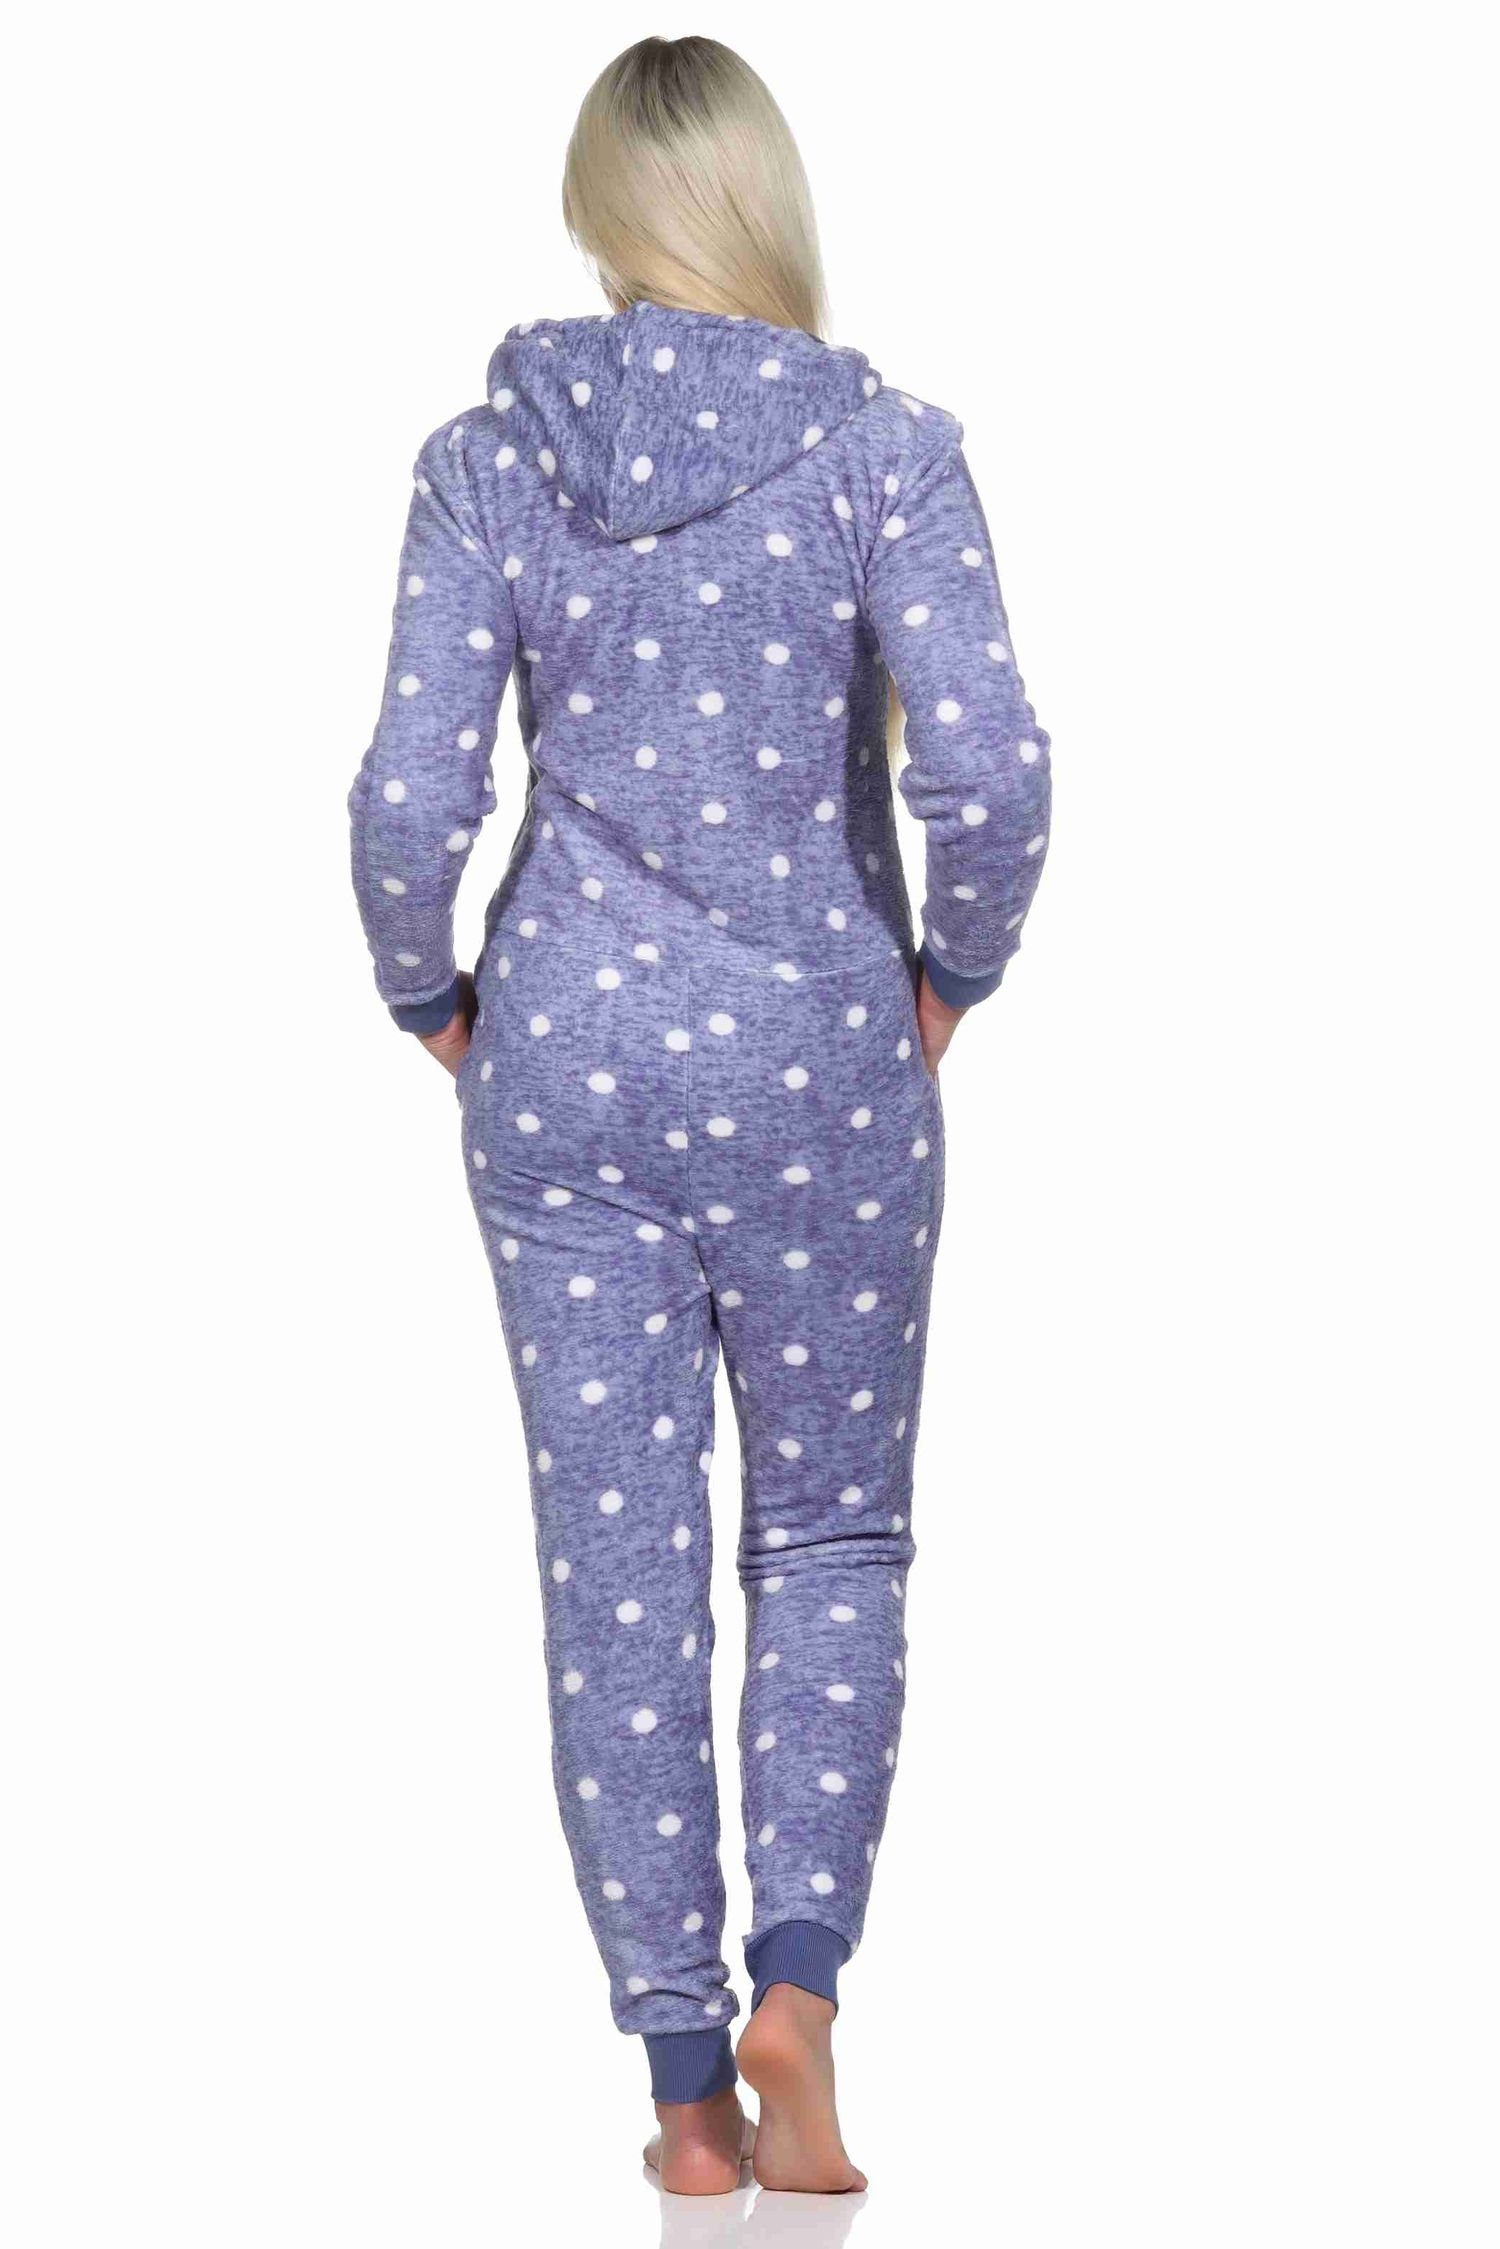 Tupfen Damen Normann blau warmer Punkte Optik Jumpsuit Schlafanzug in Pyjama Kuschelig